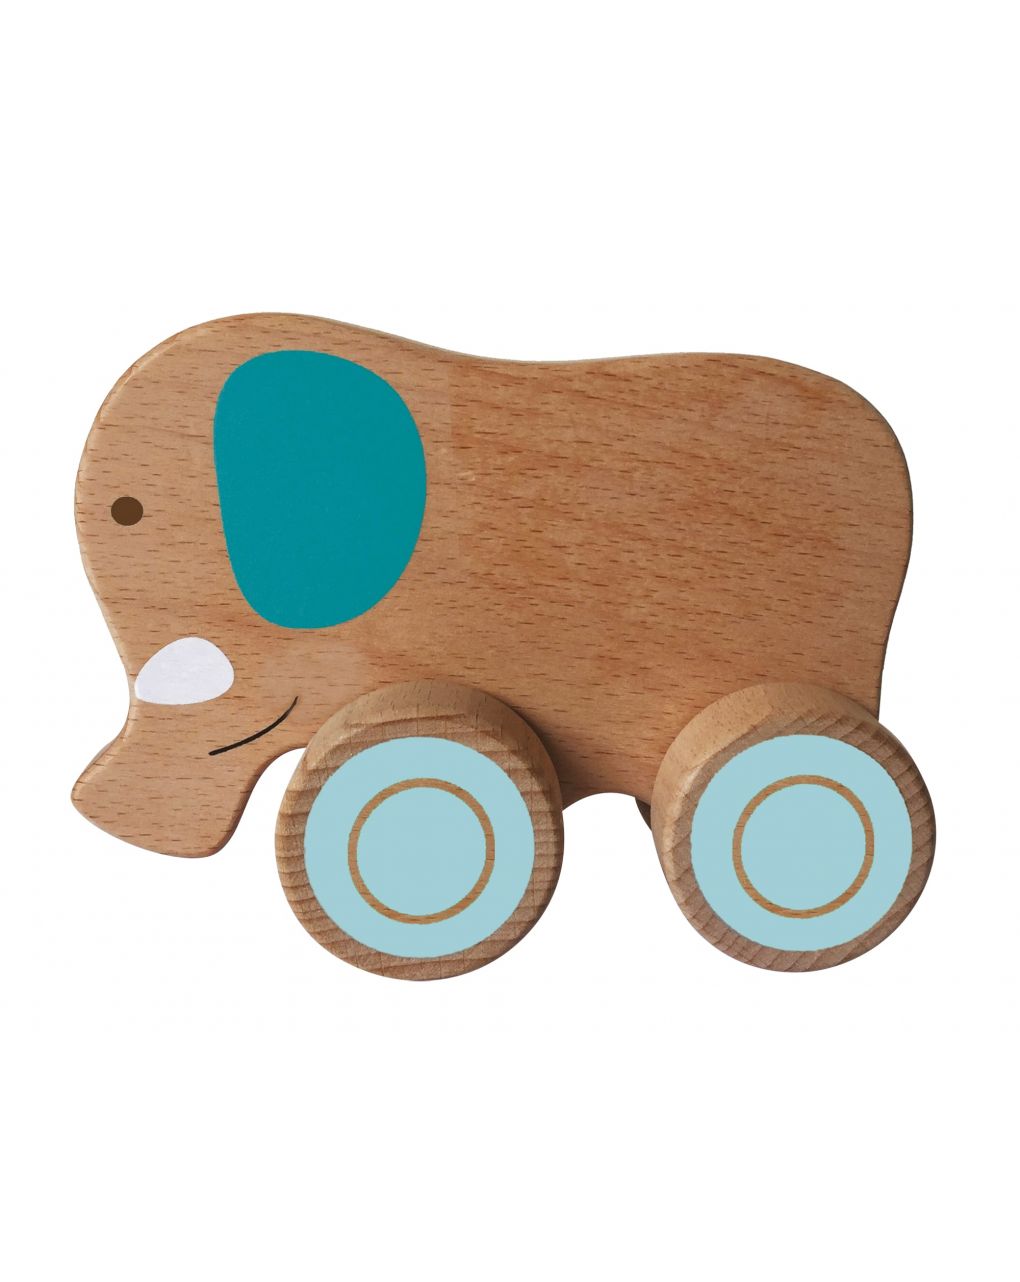 Wood n play - animais de madeira com rodas - Wood'N'Play